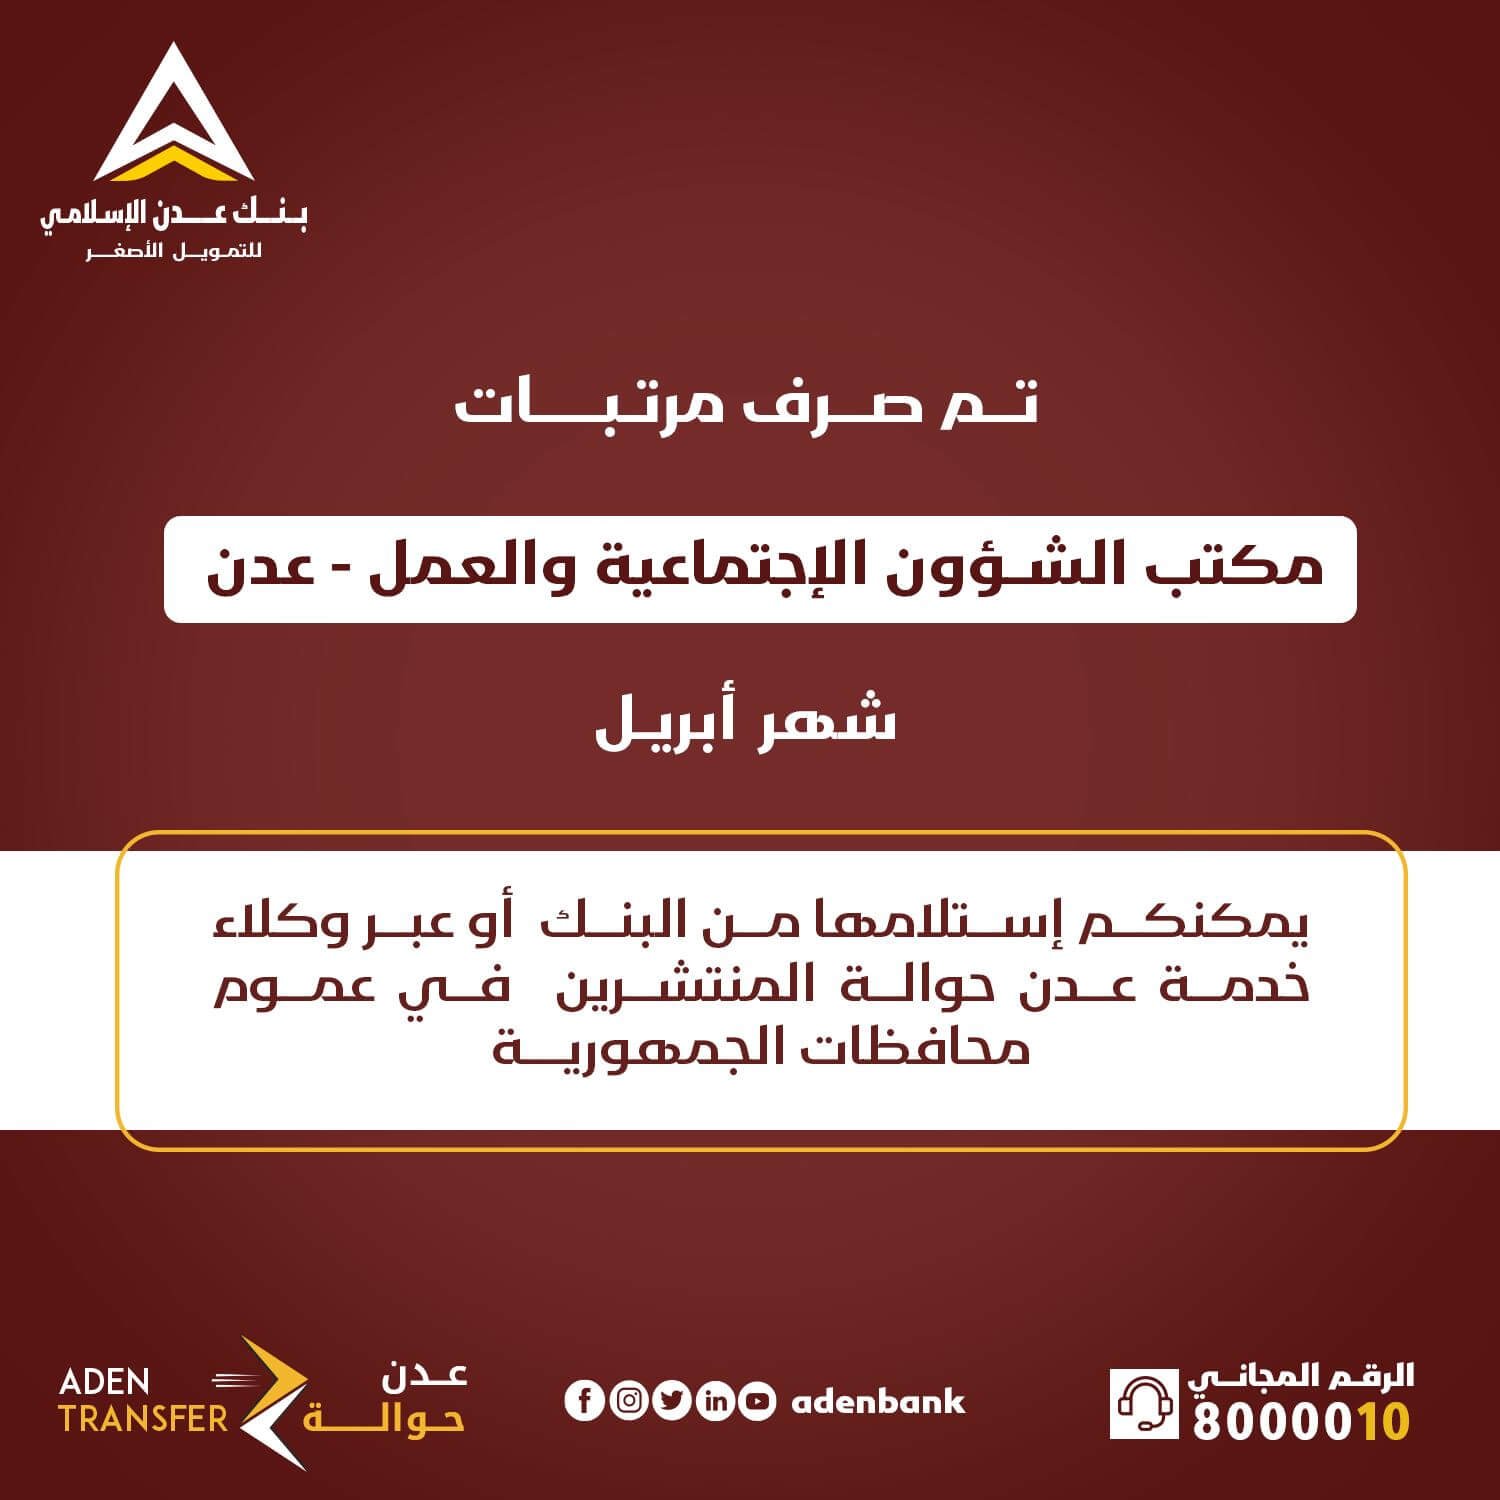 20240514 adenmedia 10 - بنك عدن يعلن بدء صرف مرتبات أبريل لموظفيّ مكتب الشؤون الاجتماعية والعمل بالعاصمة عدن